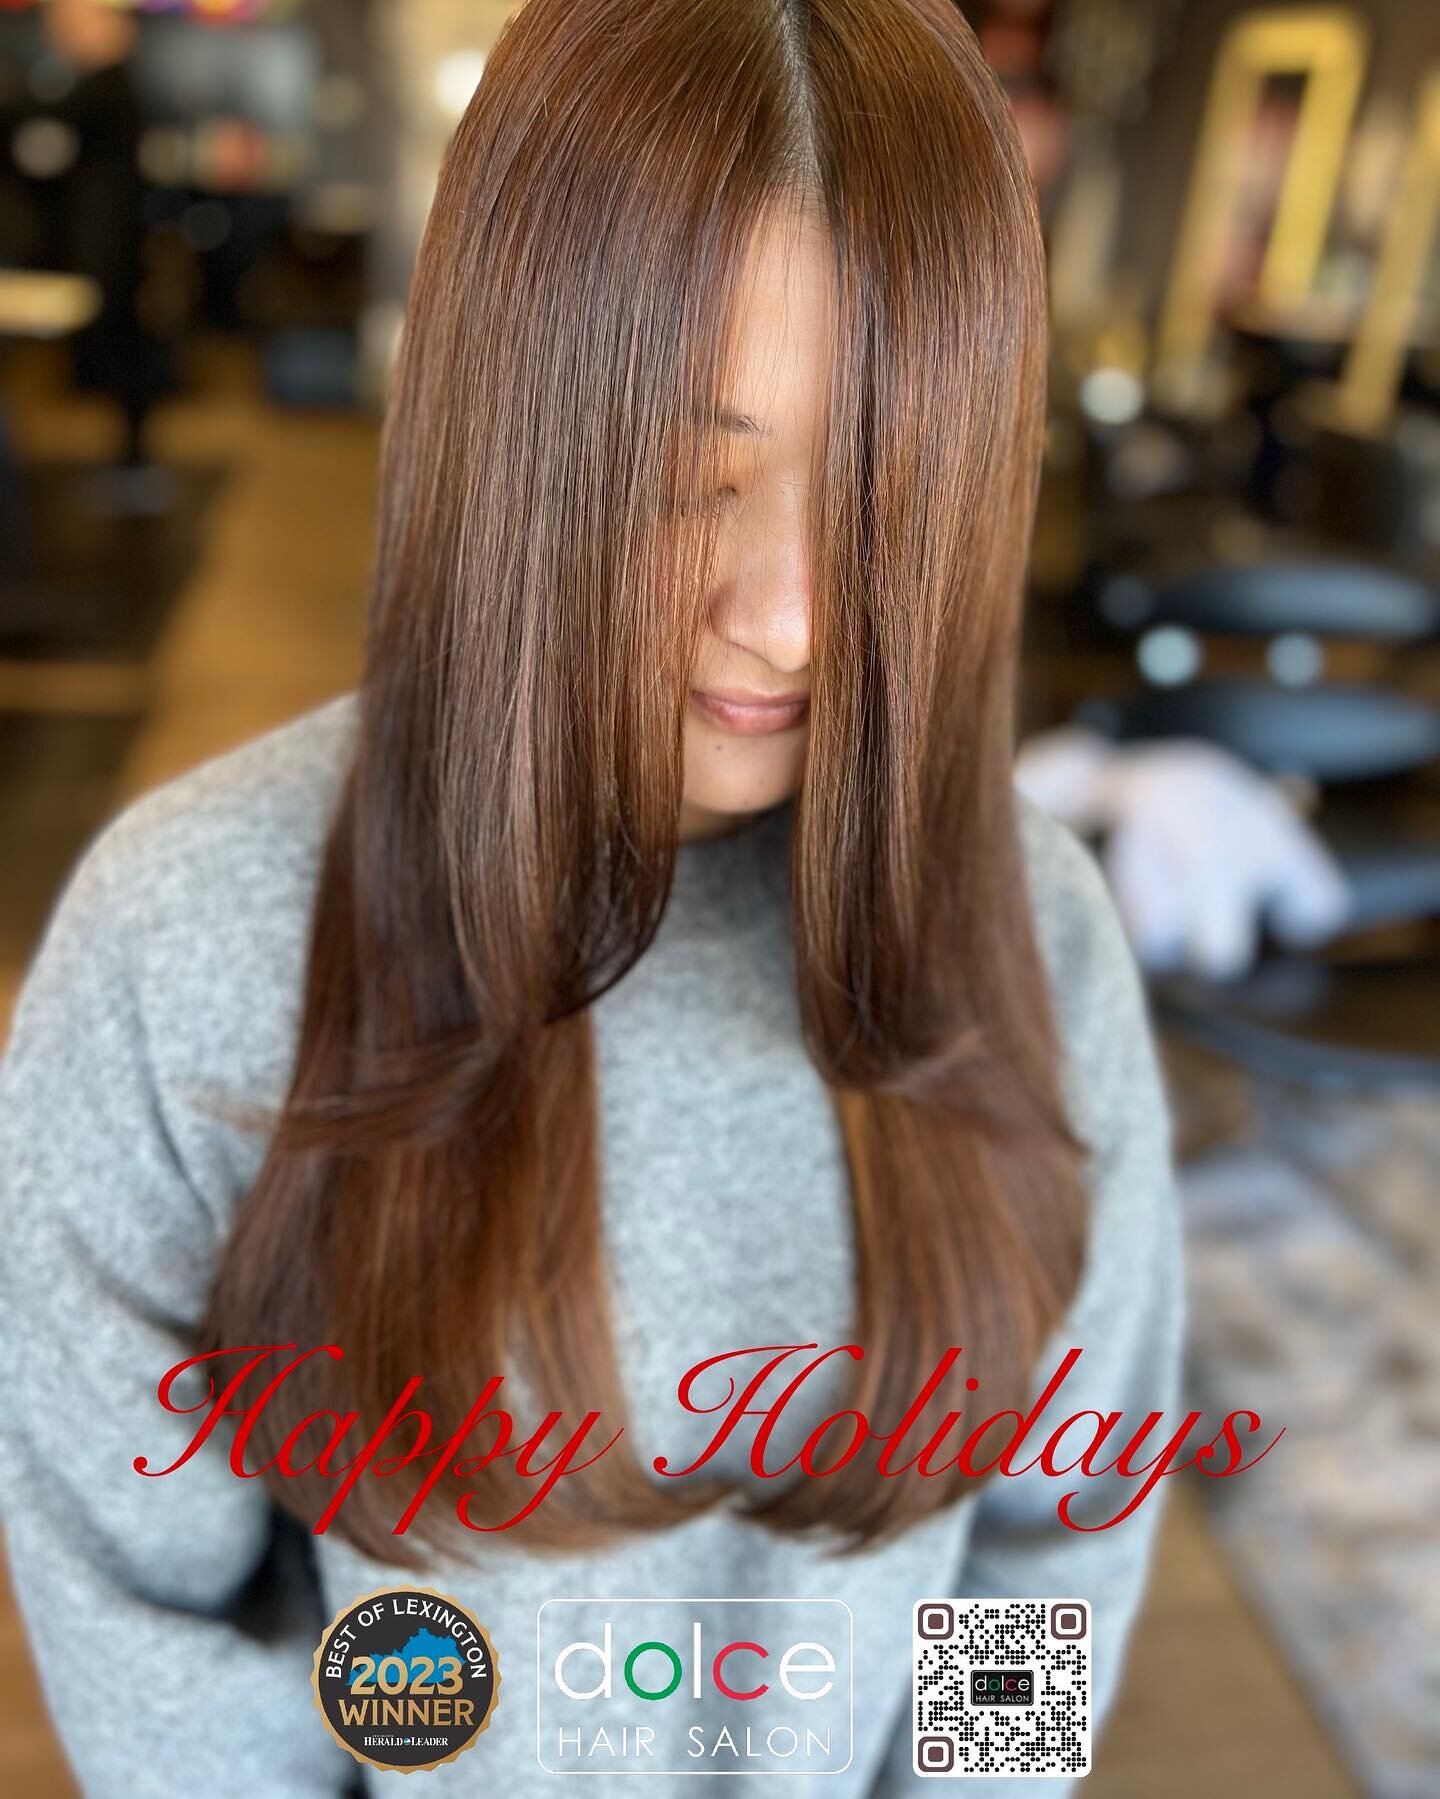 Hair by Terra @dolce.hair.salon 🌲🌲🔔last minute Christmas appointments available 🌲🔔🌲please book online or call our salon . Merry Christmas to all #lexingtonky #lexingtonstylist #kentucky #lexingtonhair 
#kyhair #kyhairstylist #hairtransformation